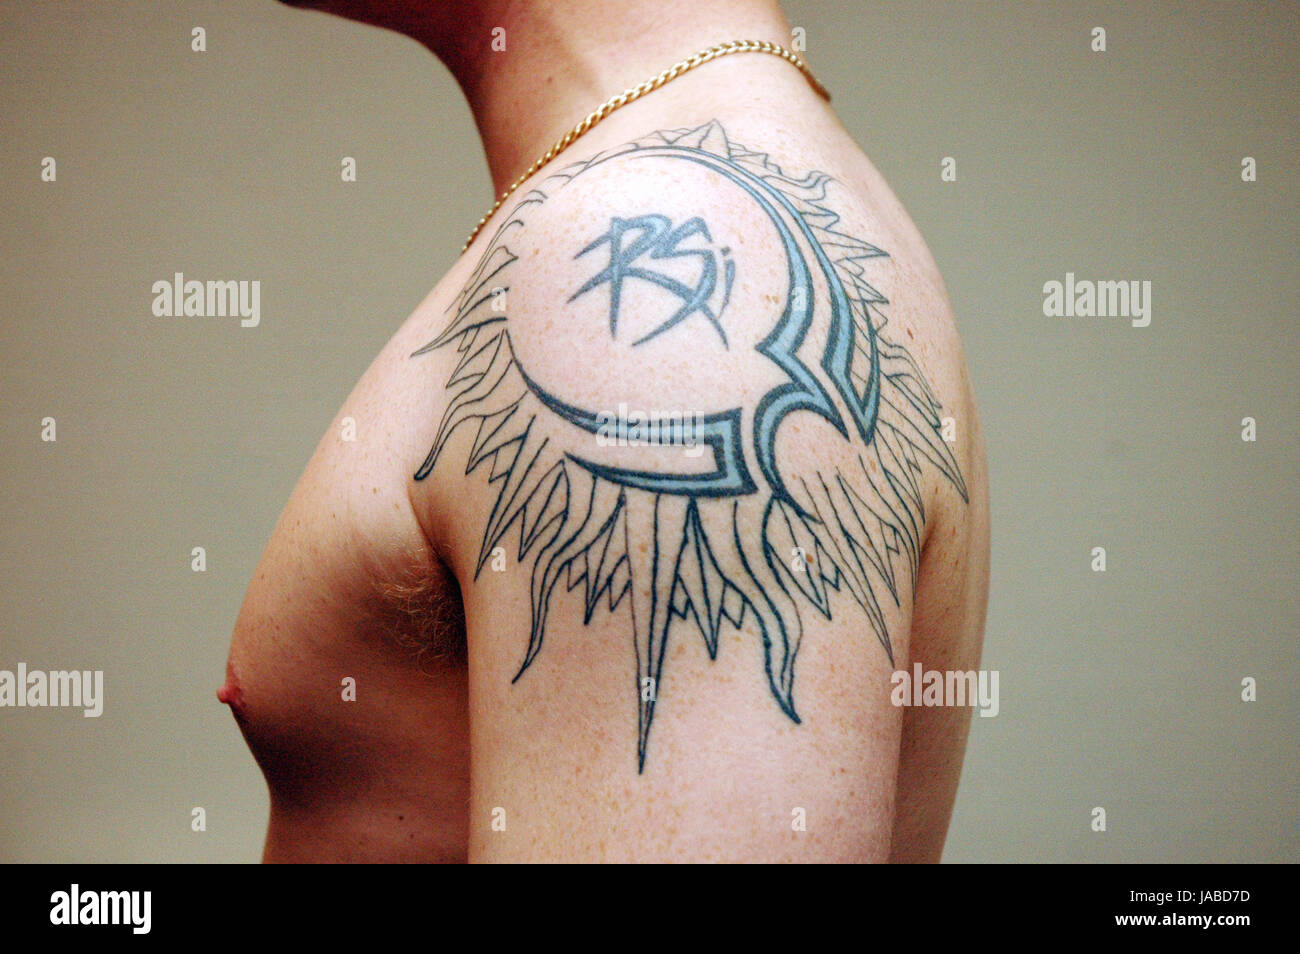 Jeune homme au tatouage sur son épaule Photo Stock - Alamy